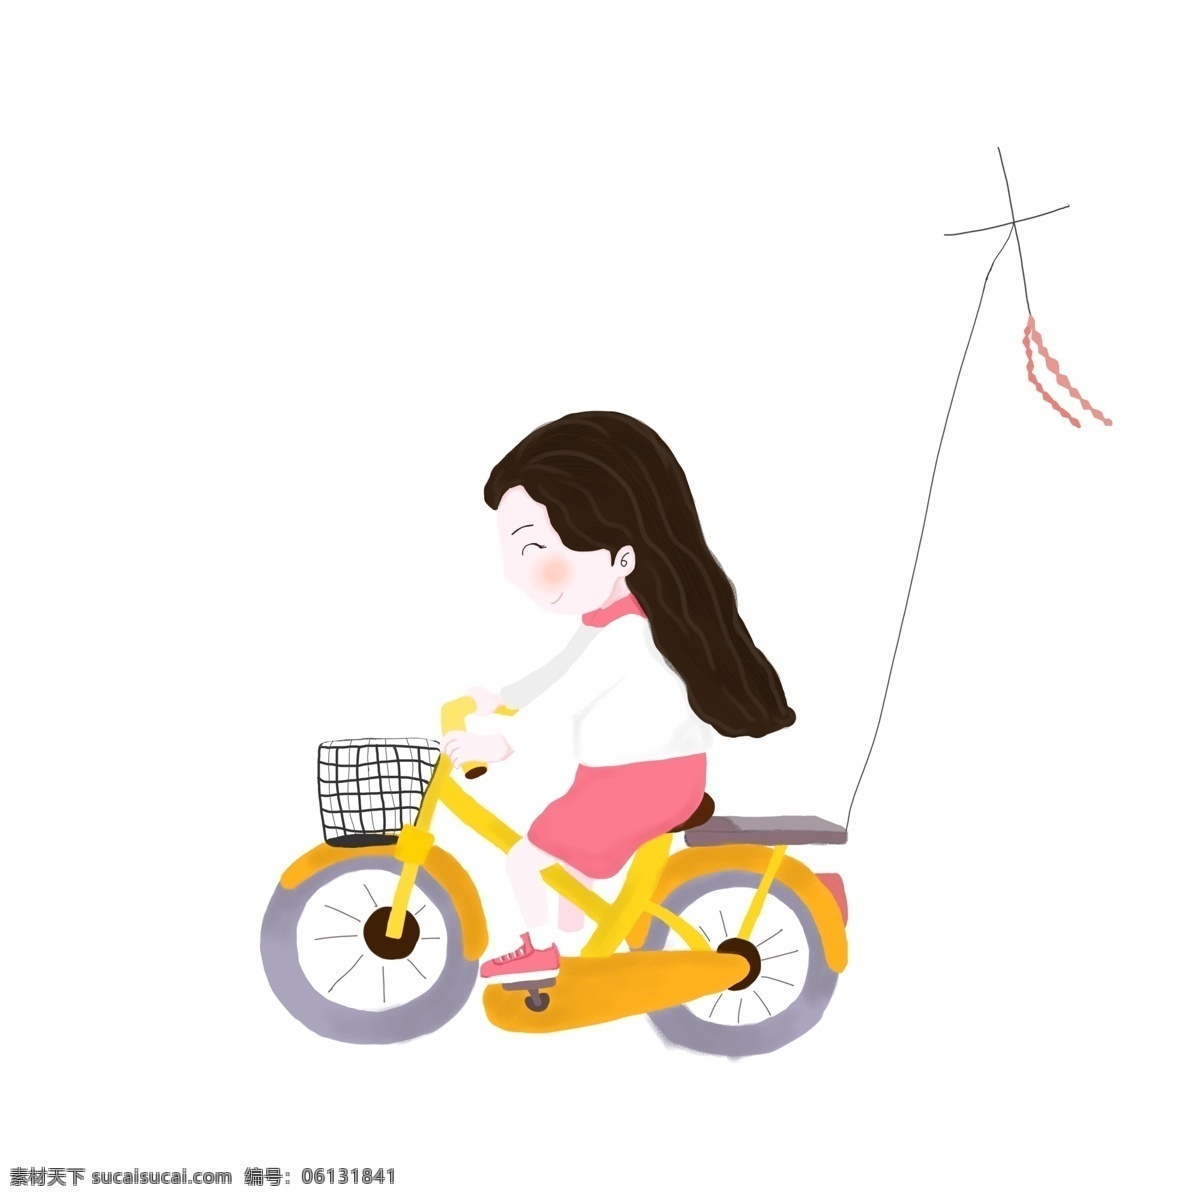 卡通 小 清新 骑 自行车 放风筝 女孩 商用 元素 小清新 风筝 插画设计 女生 骑自行车